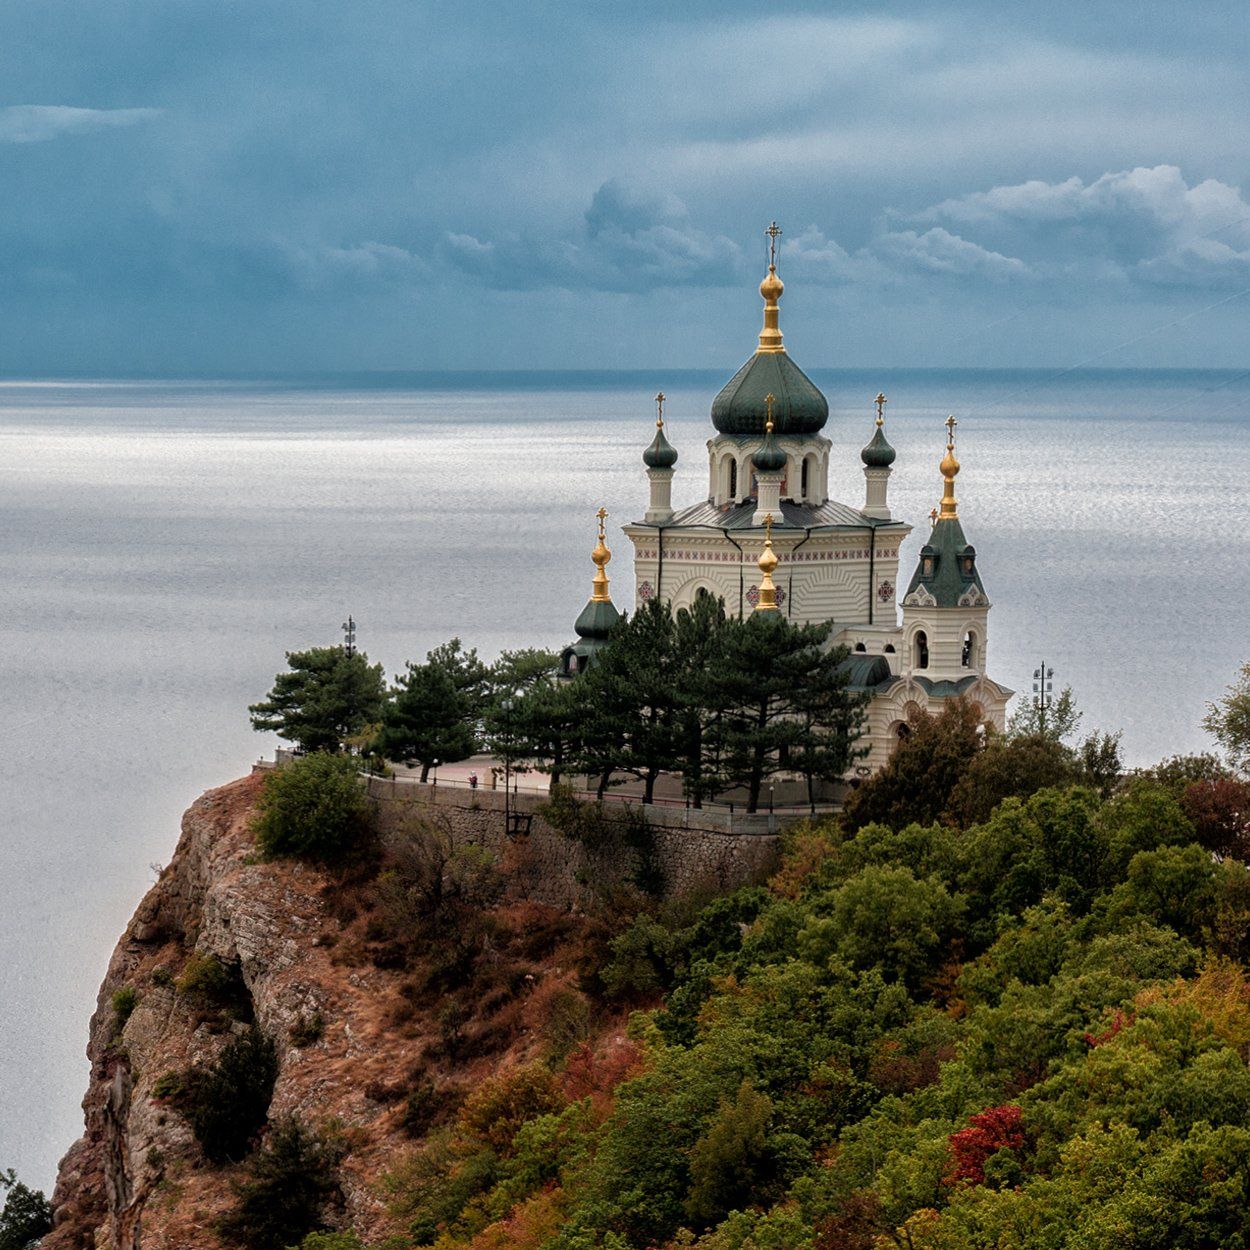 пейзаж,море,крым,церковь, Анатолий Зверев